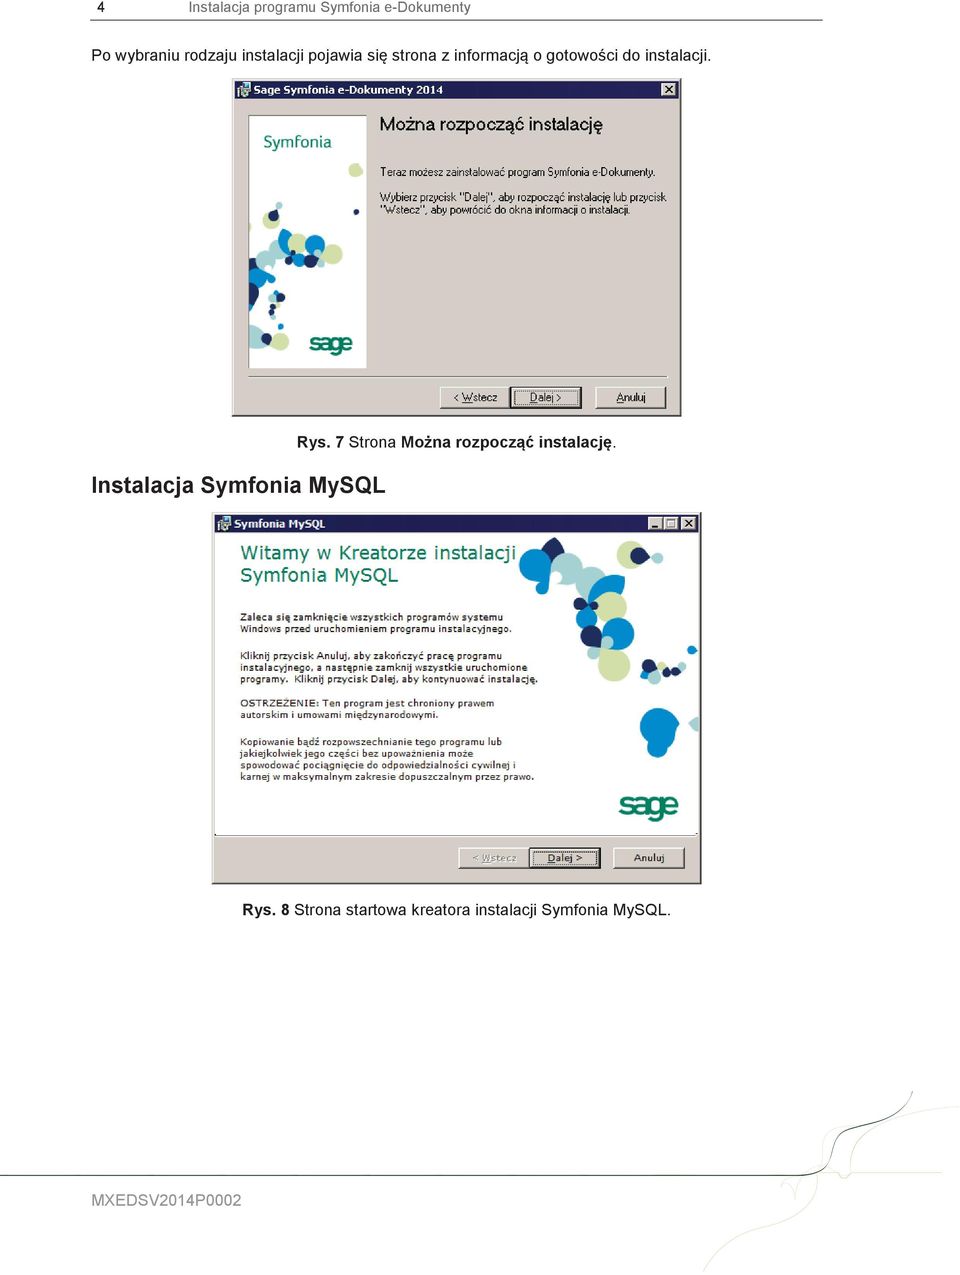 Instalacja Symfonia MySQL Rys. 7 Strona Można rozpocząć instalację.